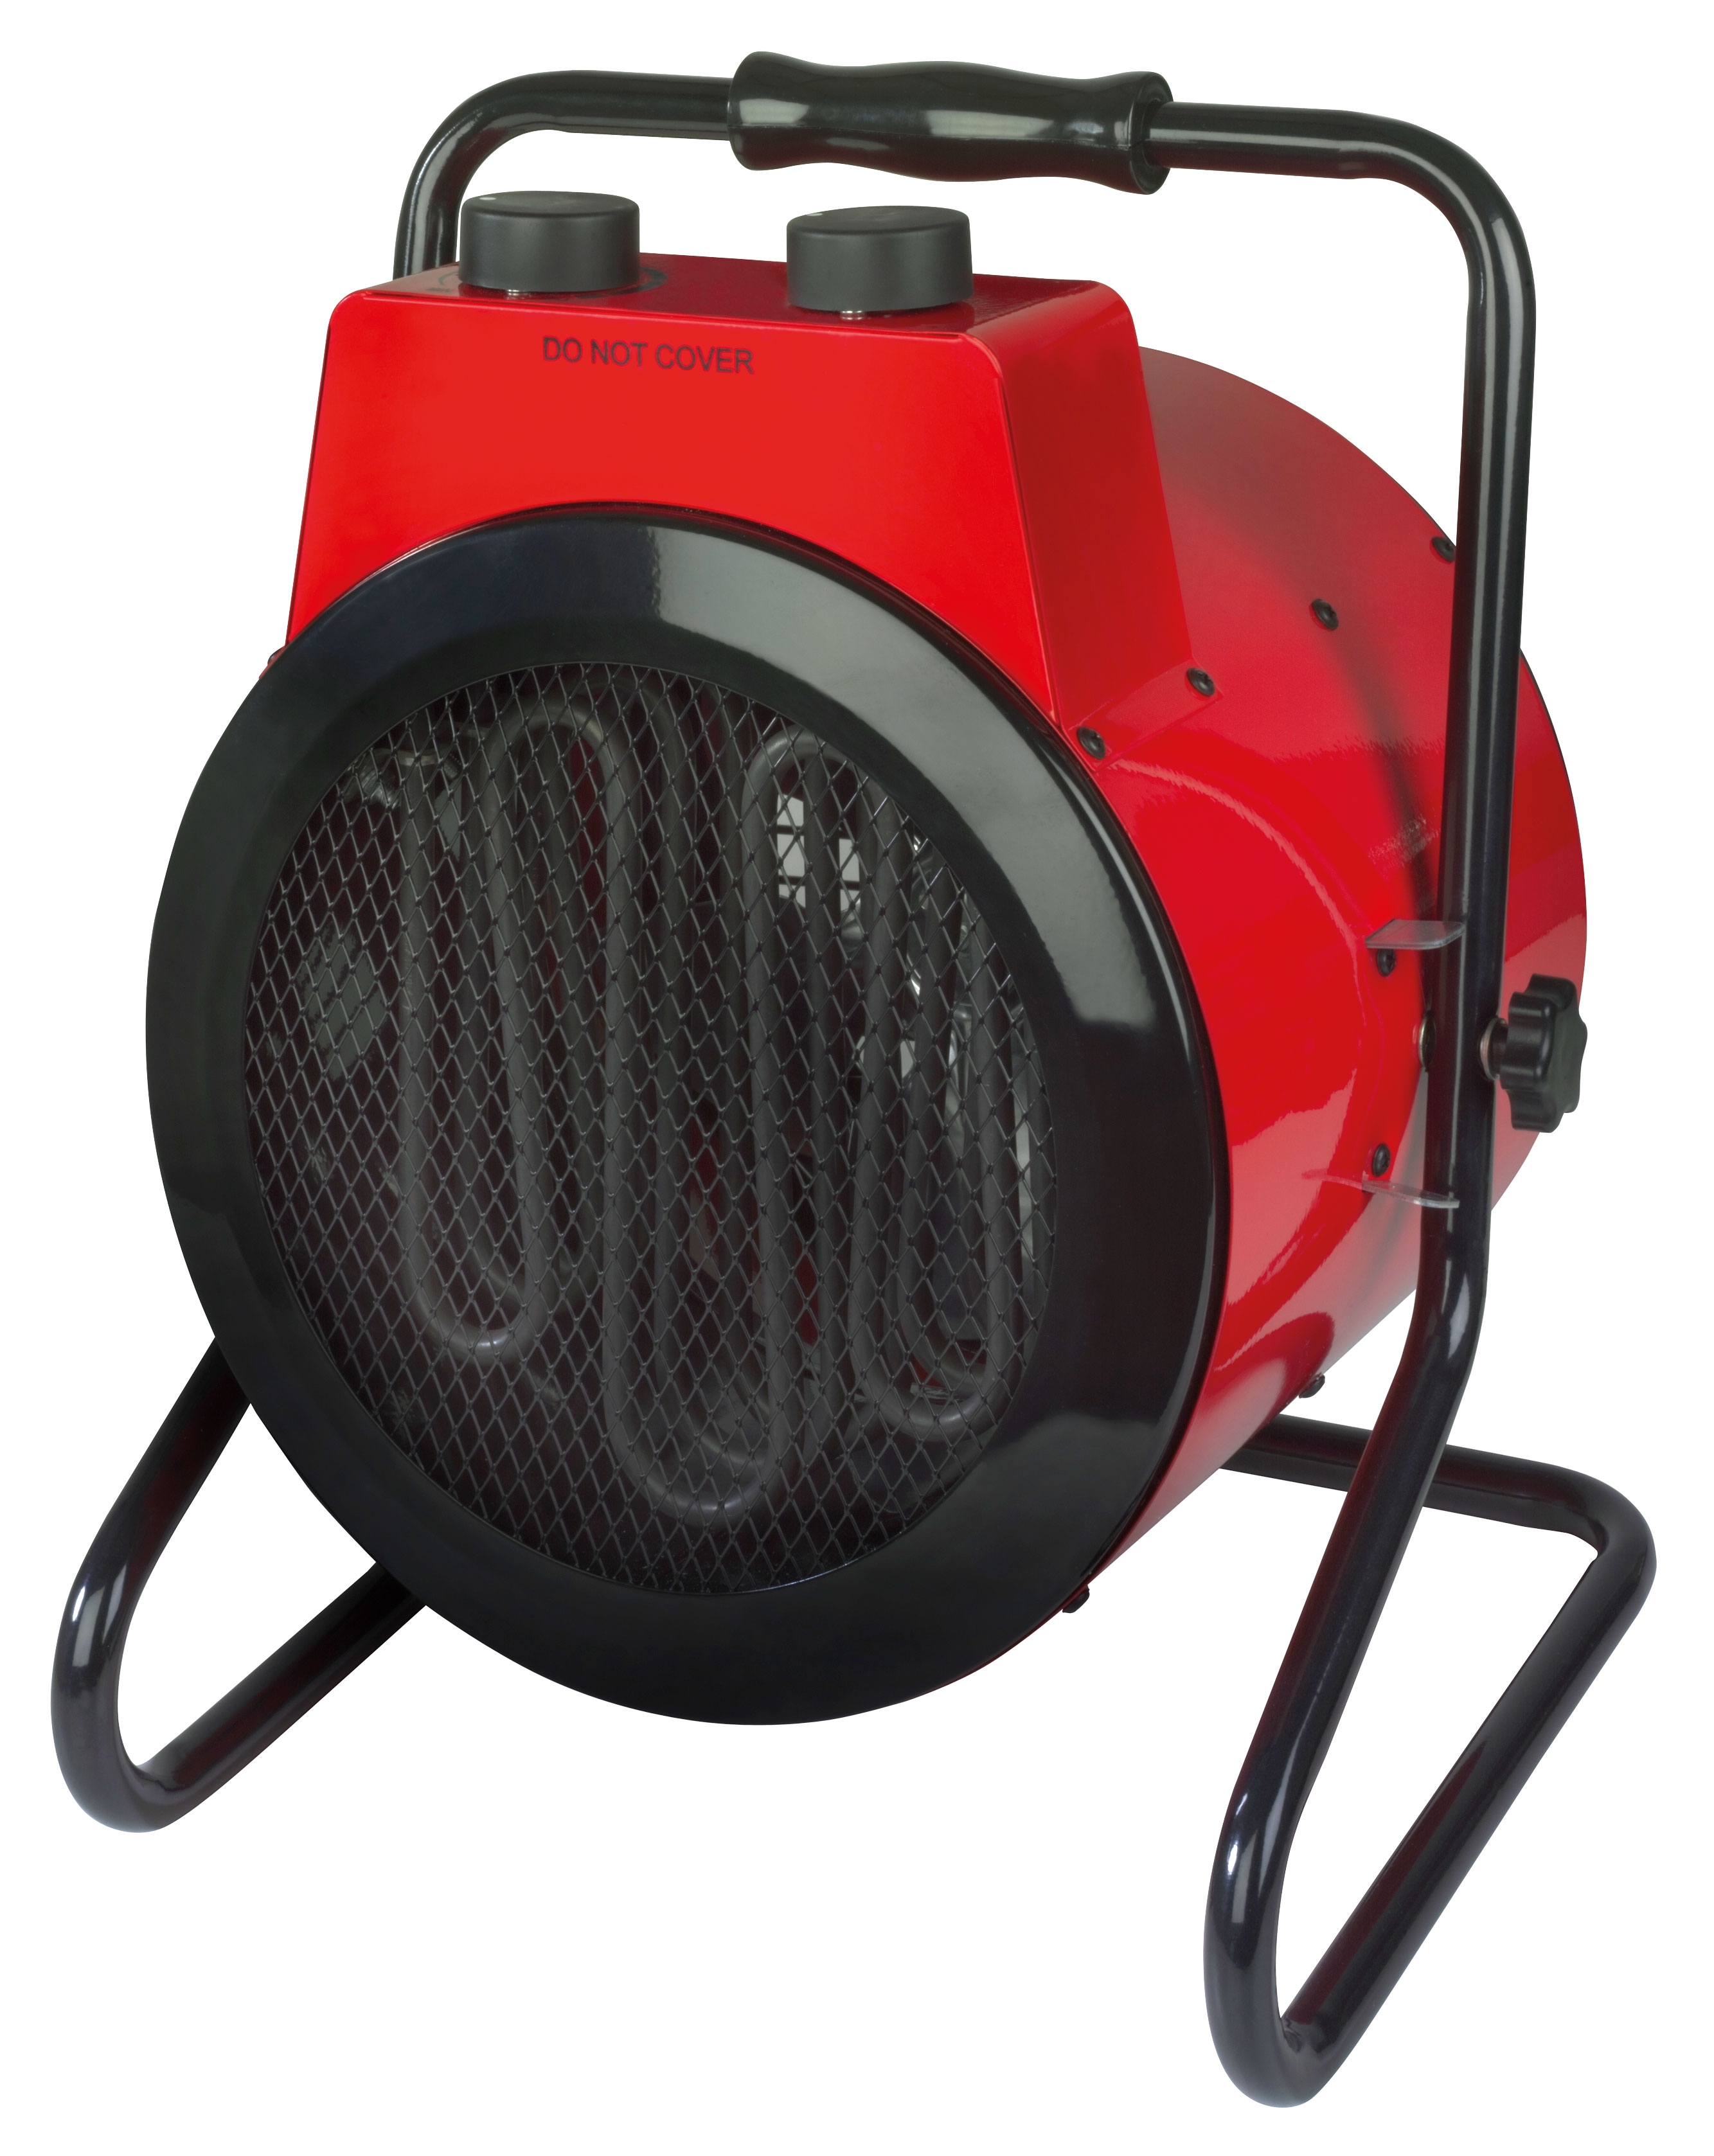 Eurom EK 2000 Fanheat radiateur soufflant 2000W rouge